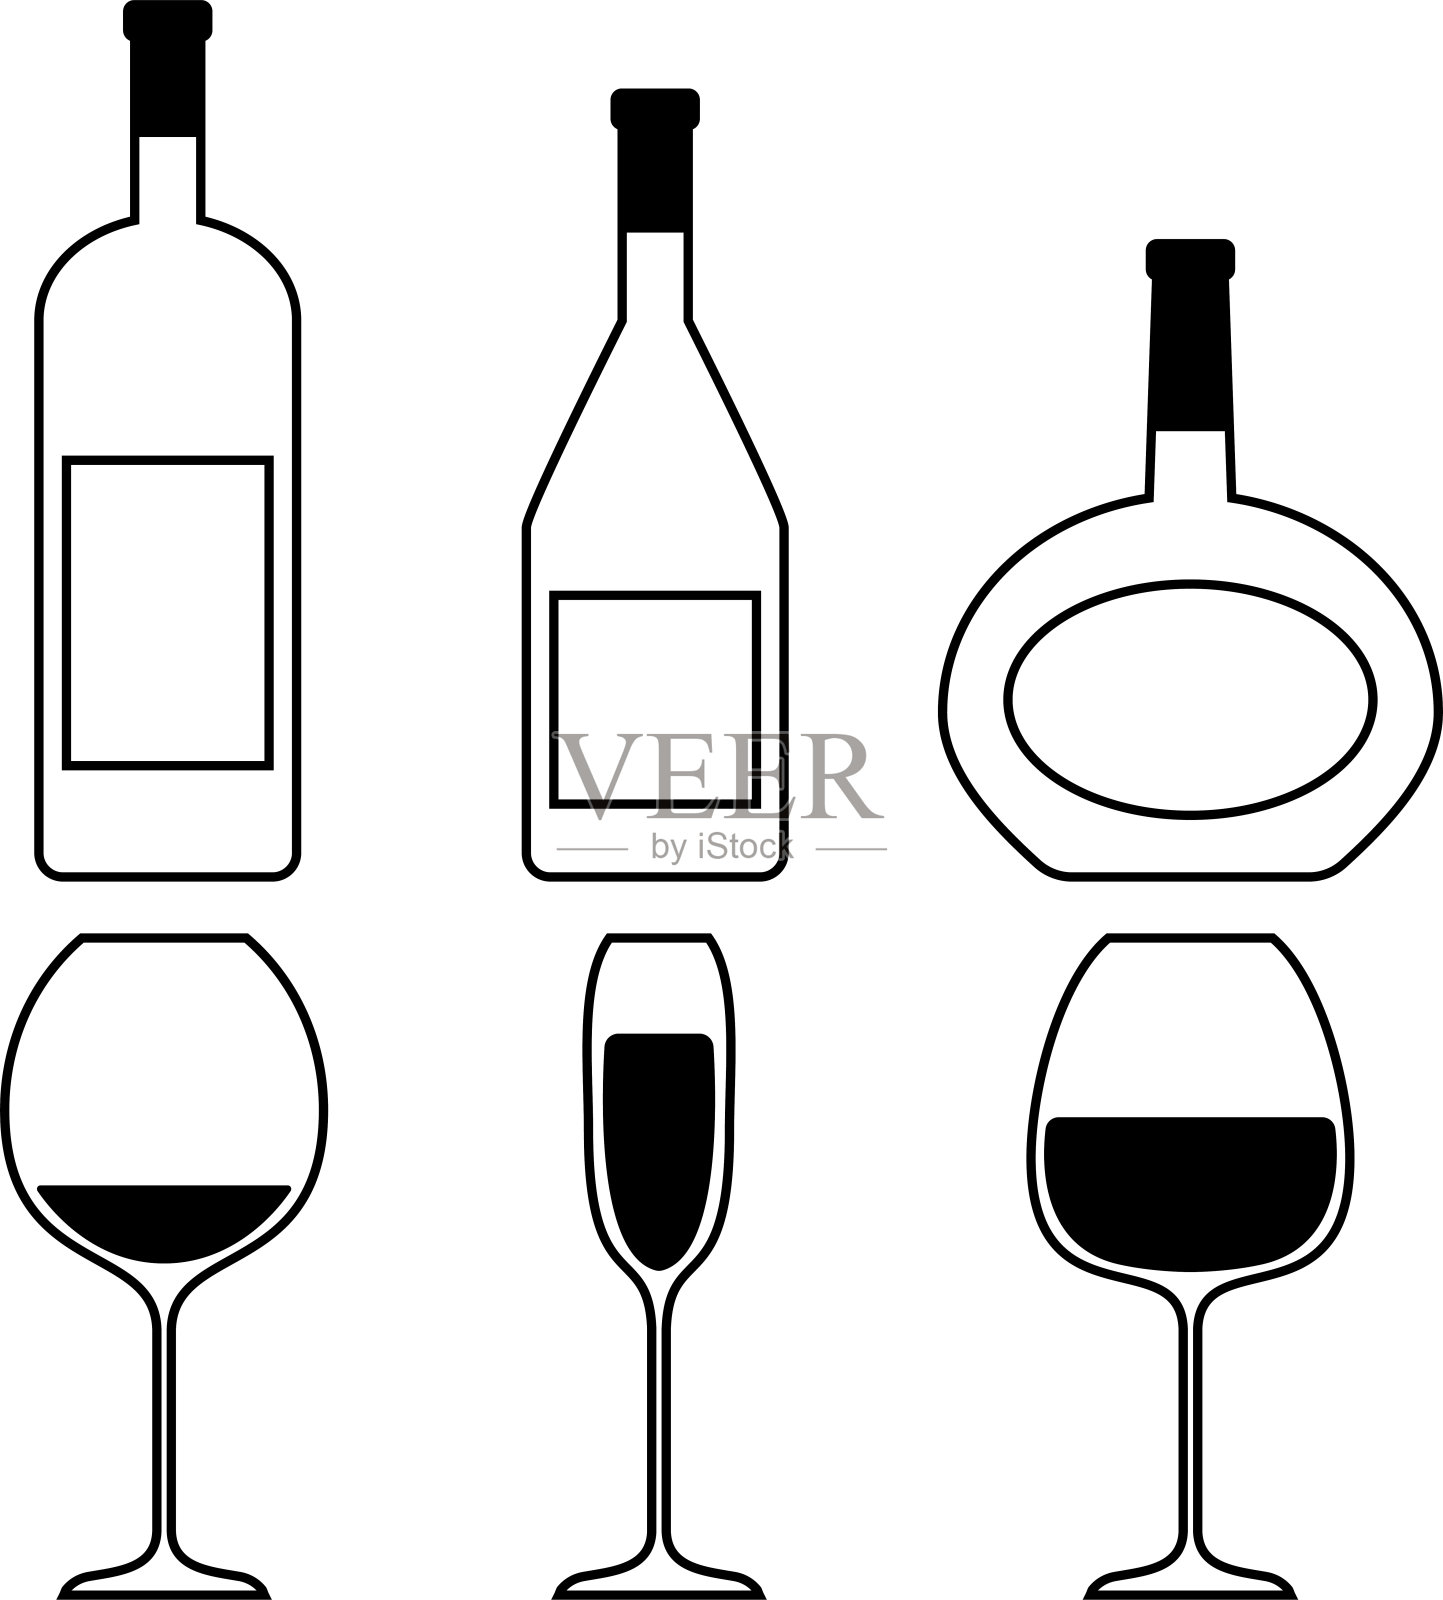 葡萄酒大纲设置设计元素图片